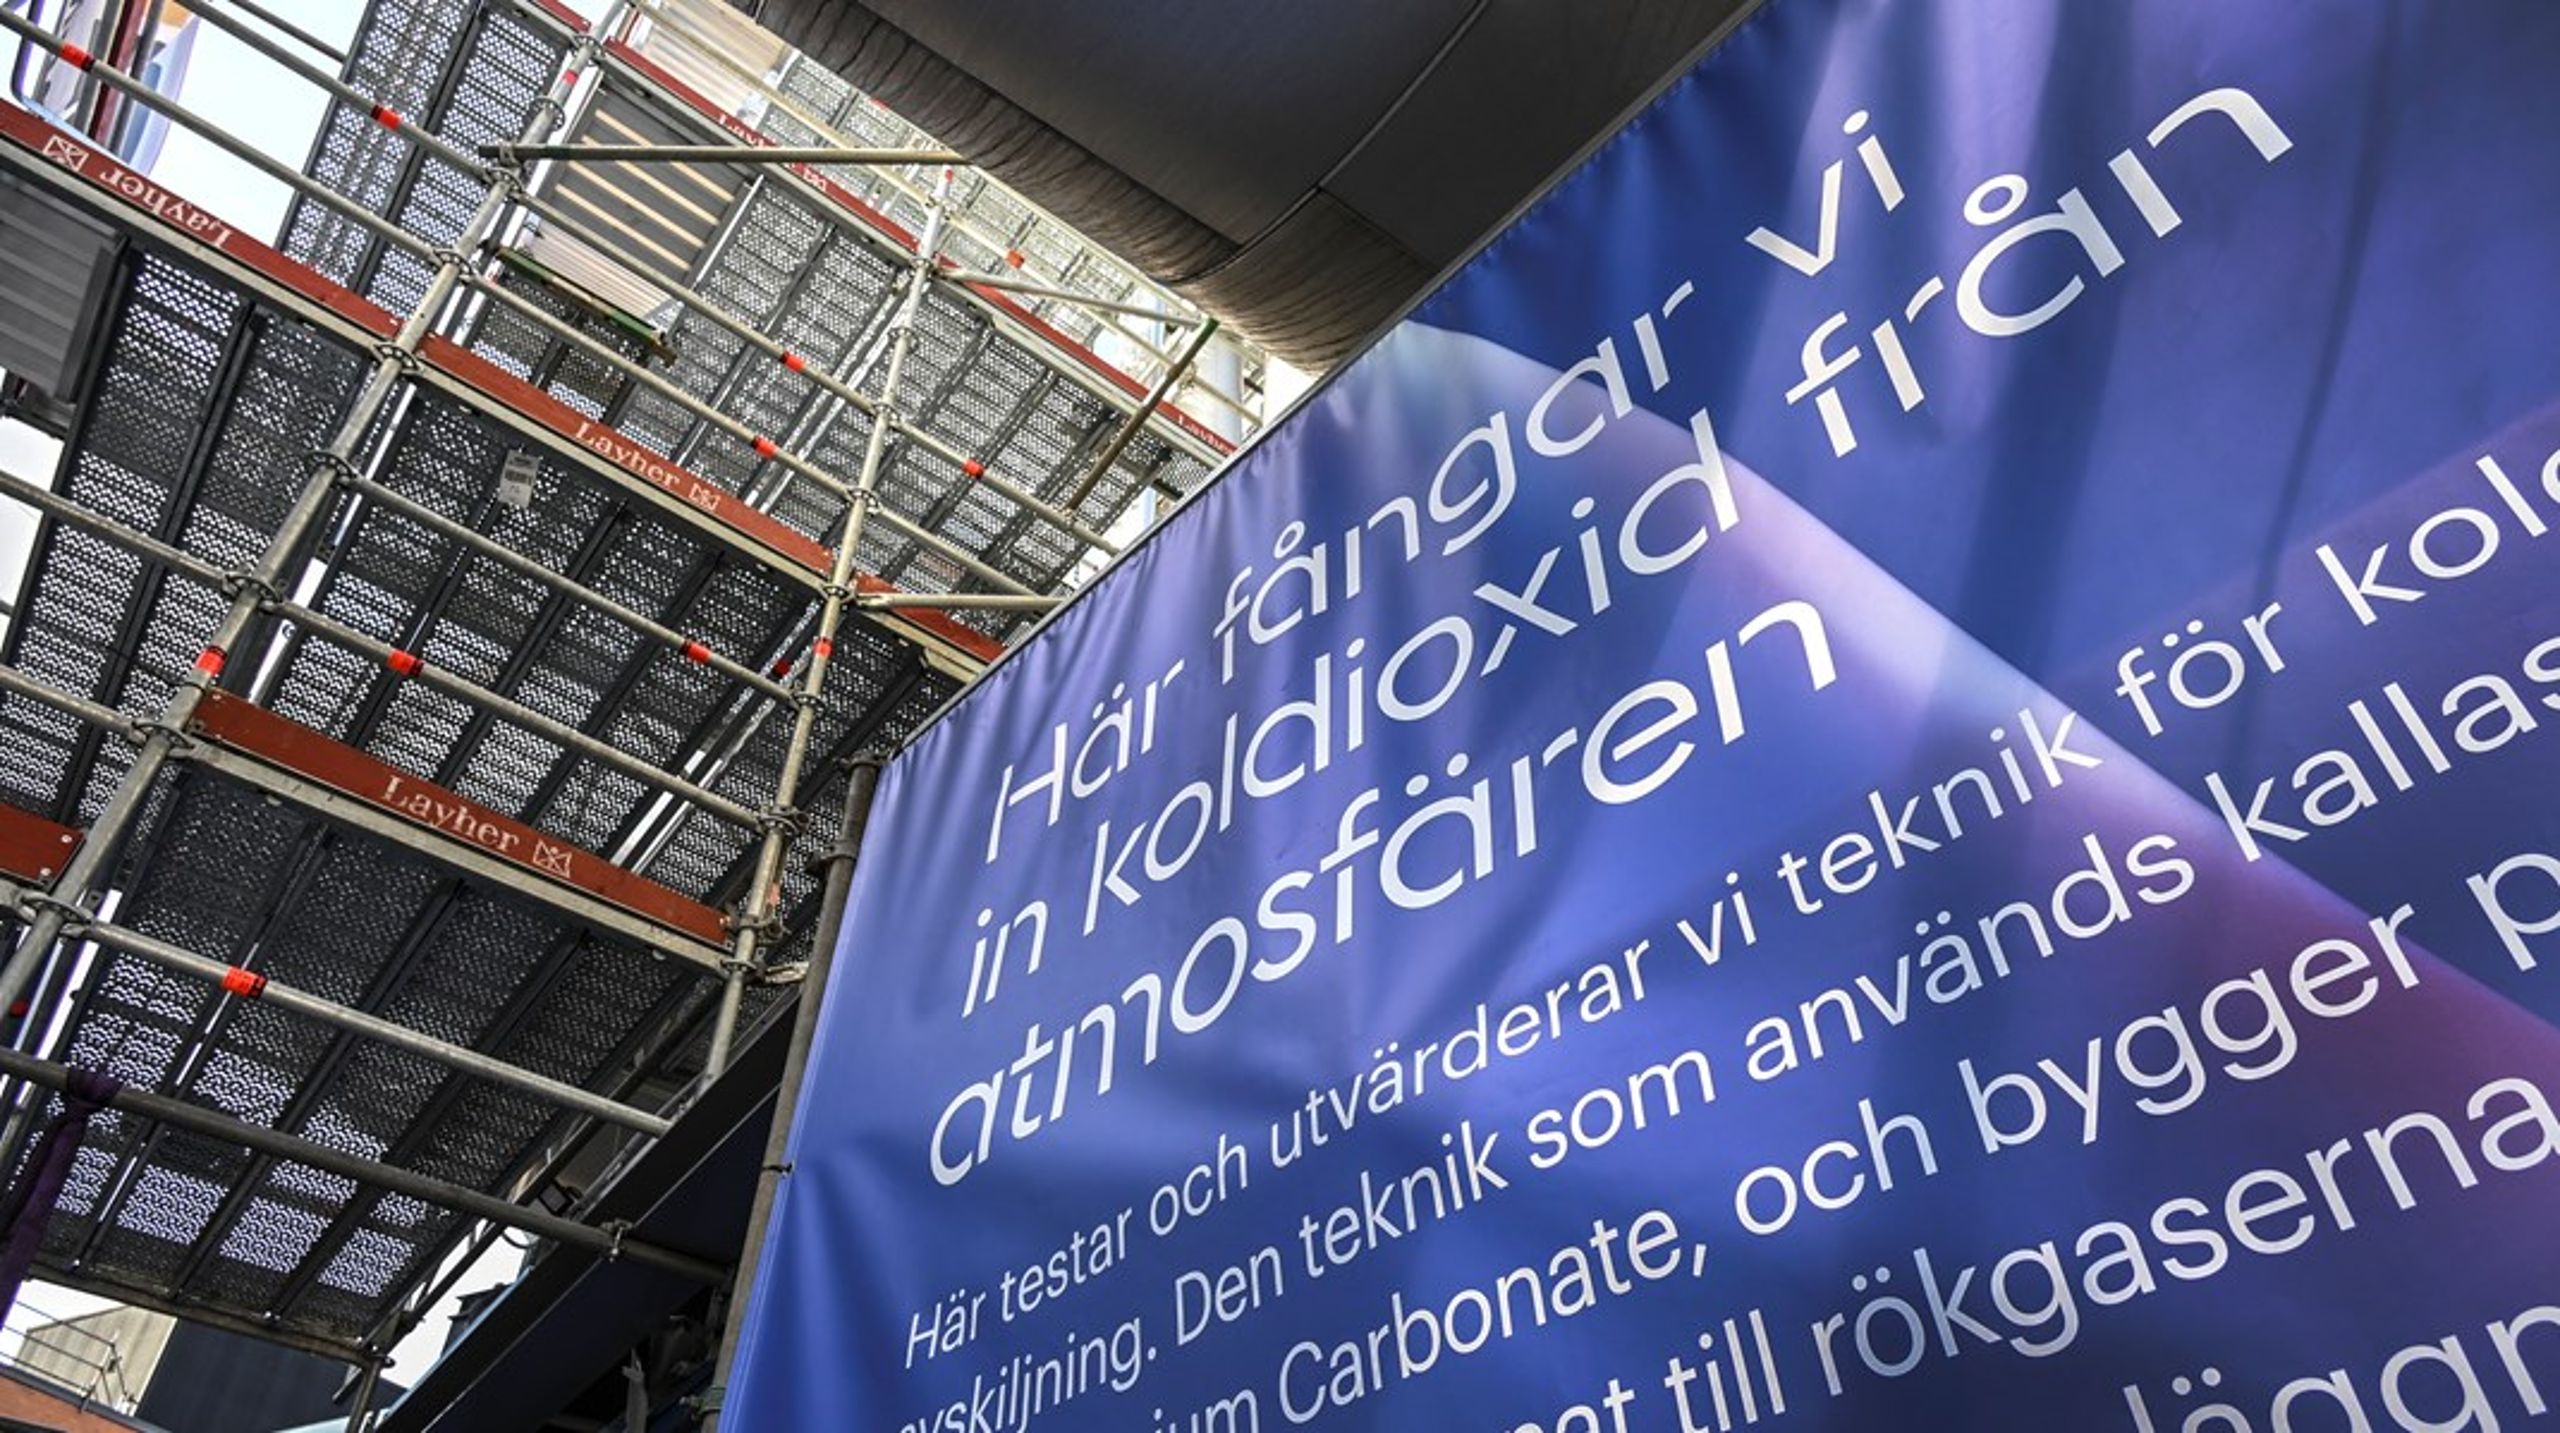 Stockholm Exergi har en pilotanläggning för bio-CCS och har väntat på en satsning från regeringen.